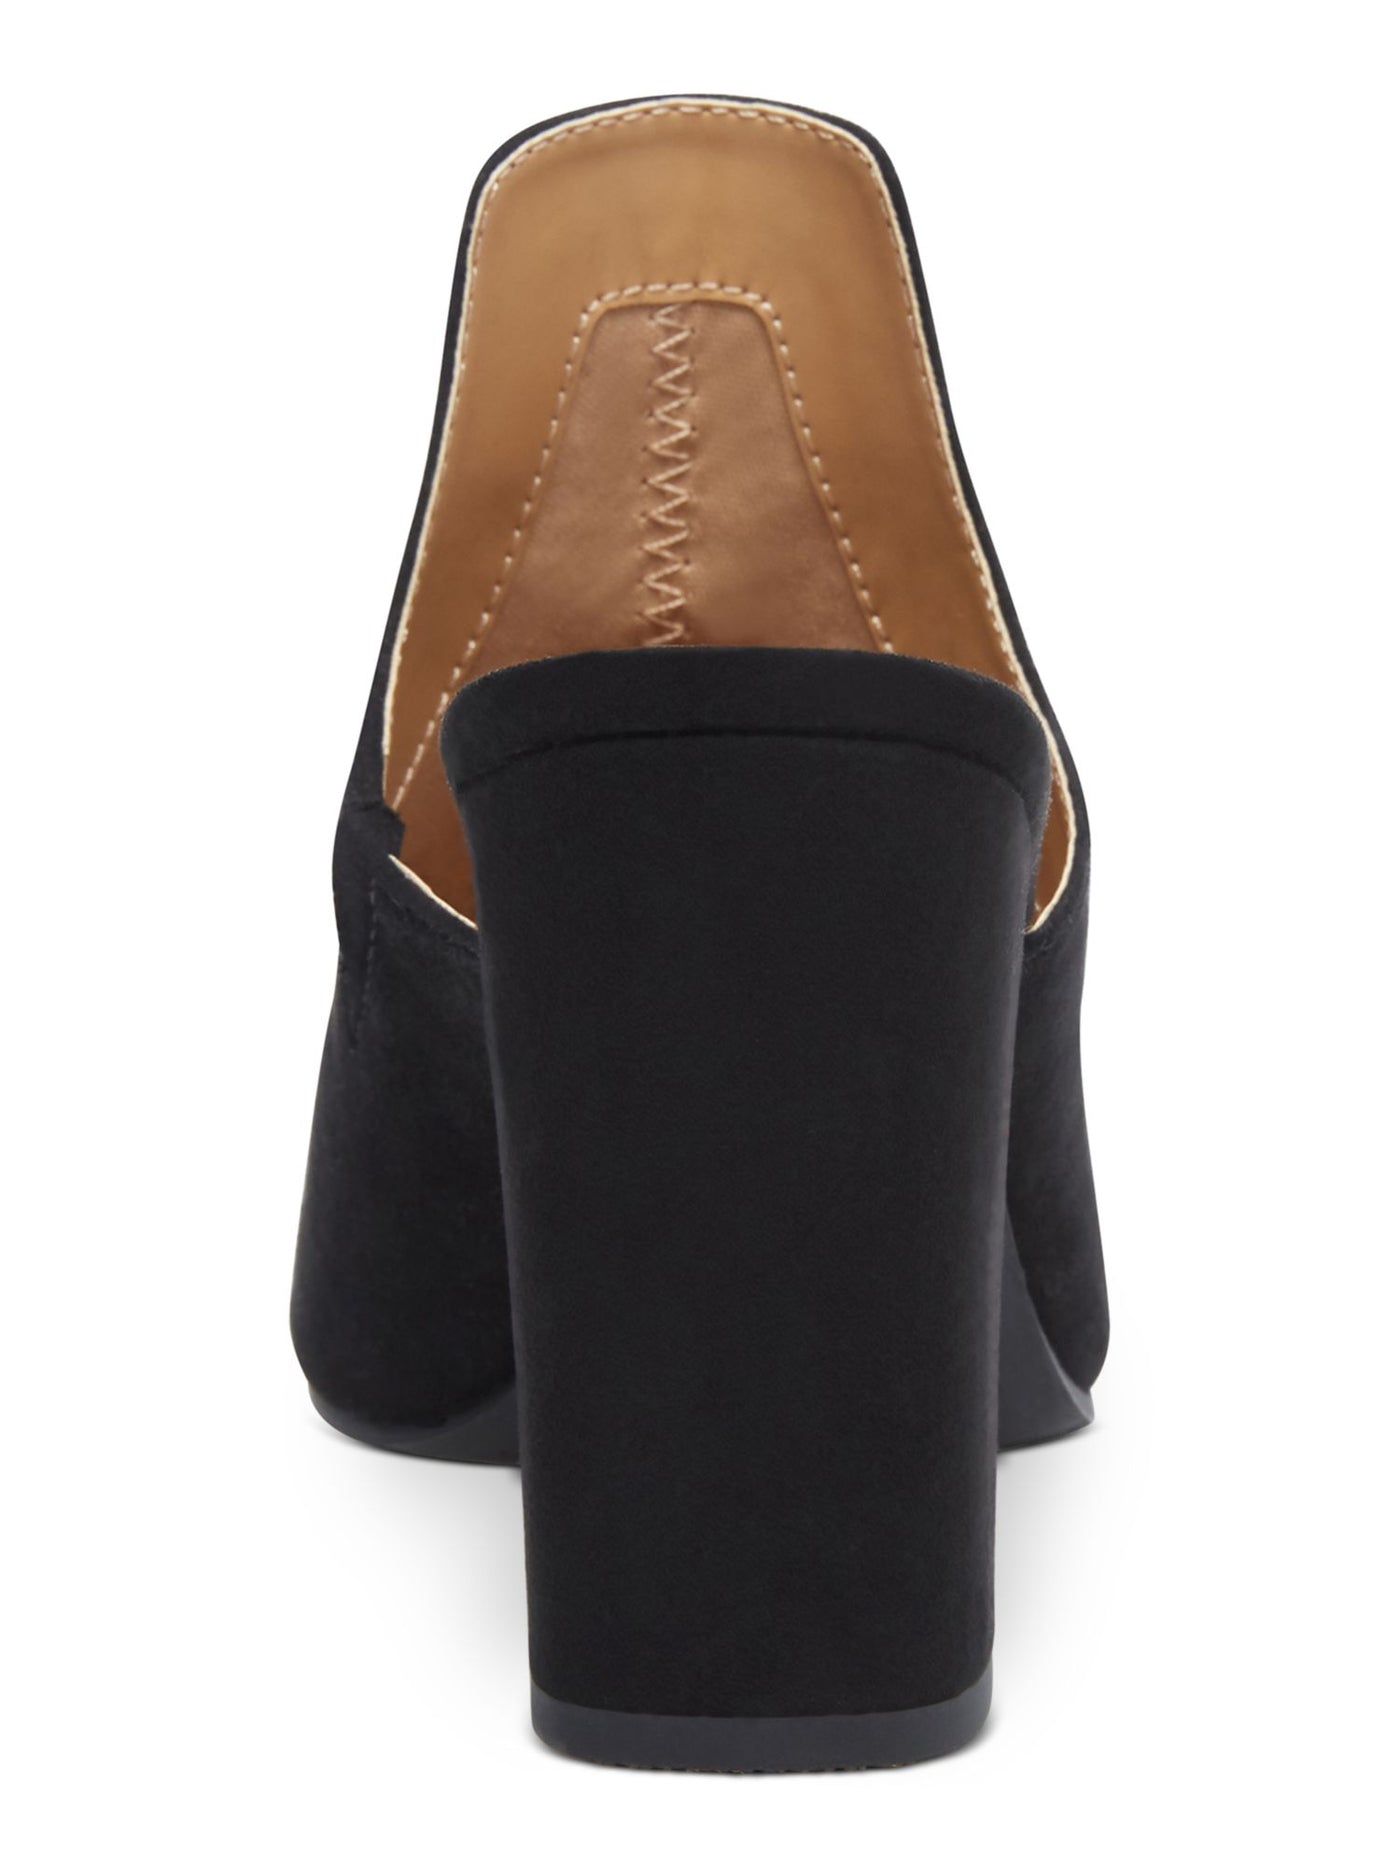 WILD PAIR Womens Black Extended Vamp Carlita Pointed Toe Block Heel Slip On Heeled Mules Shoes 6 M